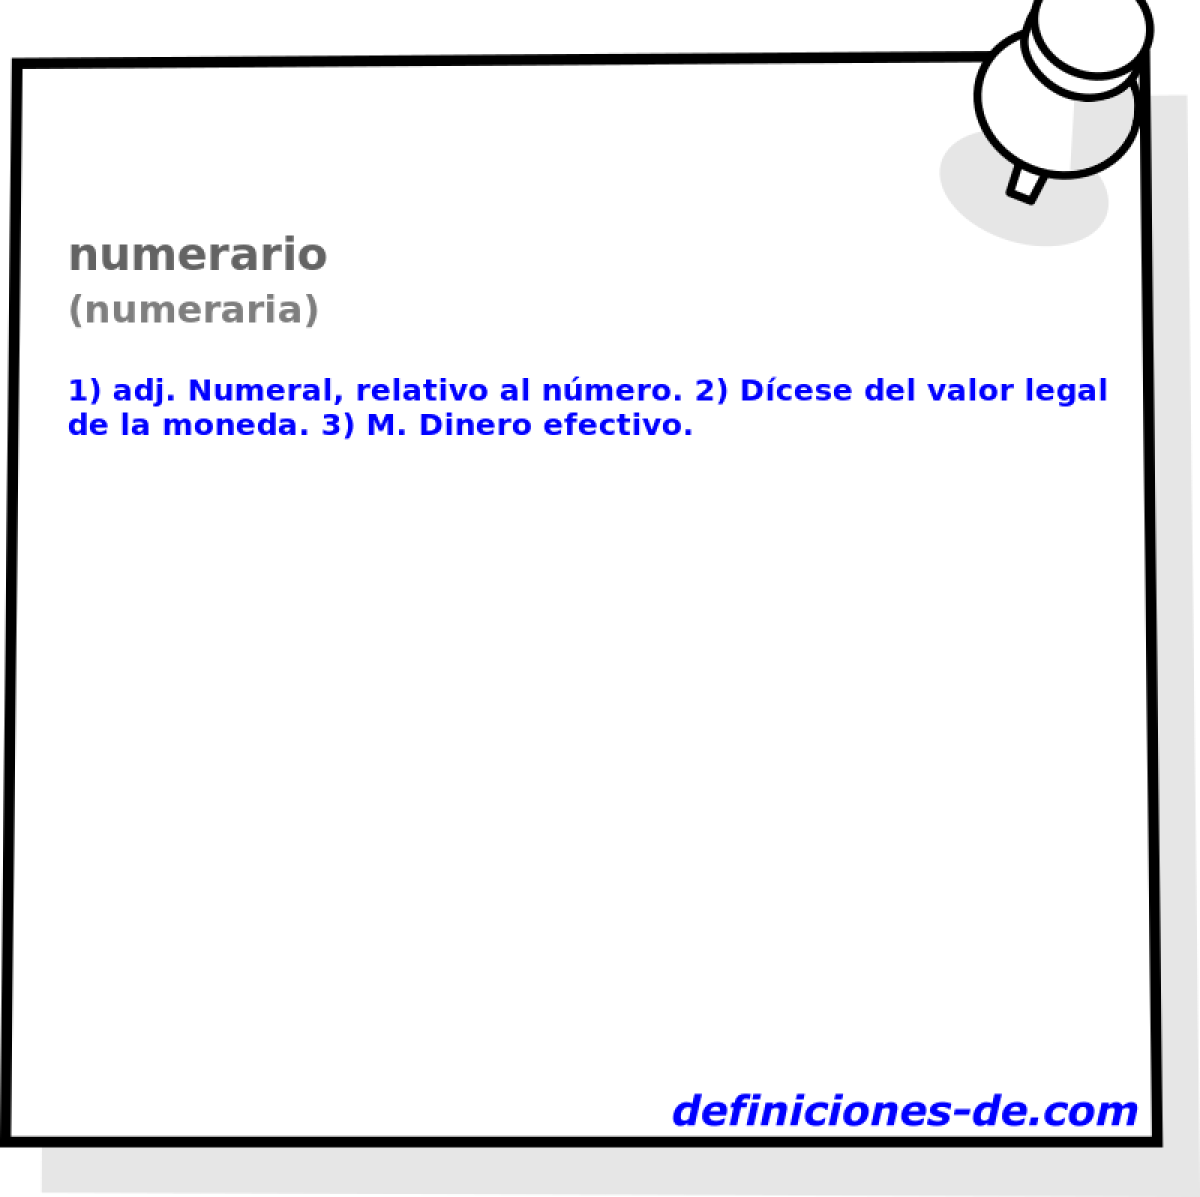 numerario (numeraria)